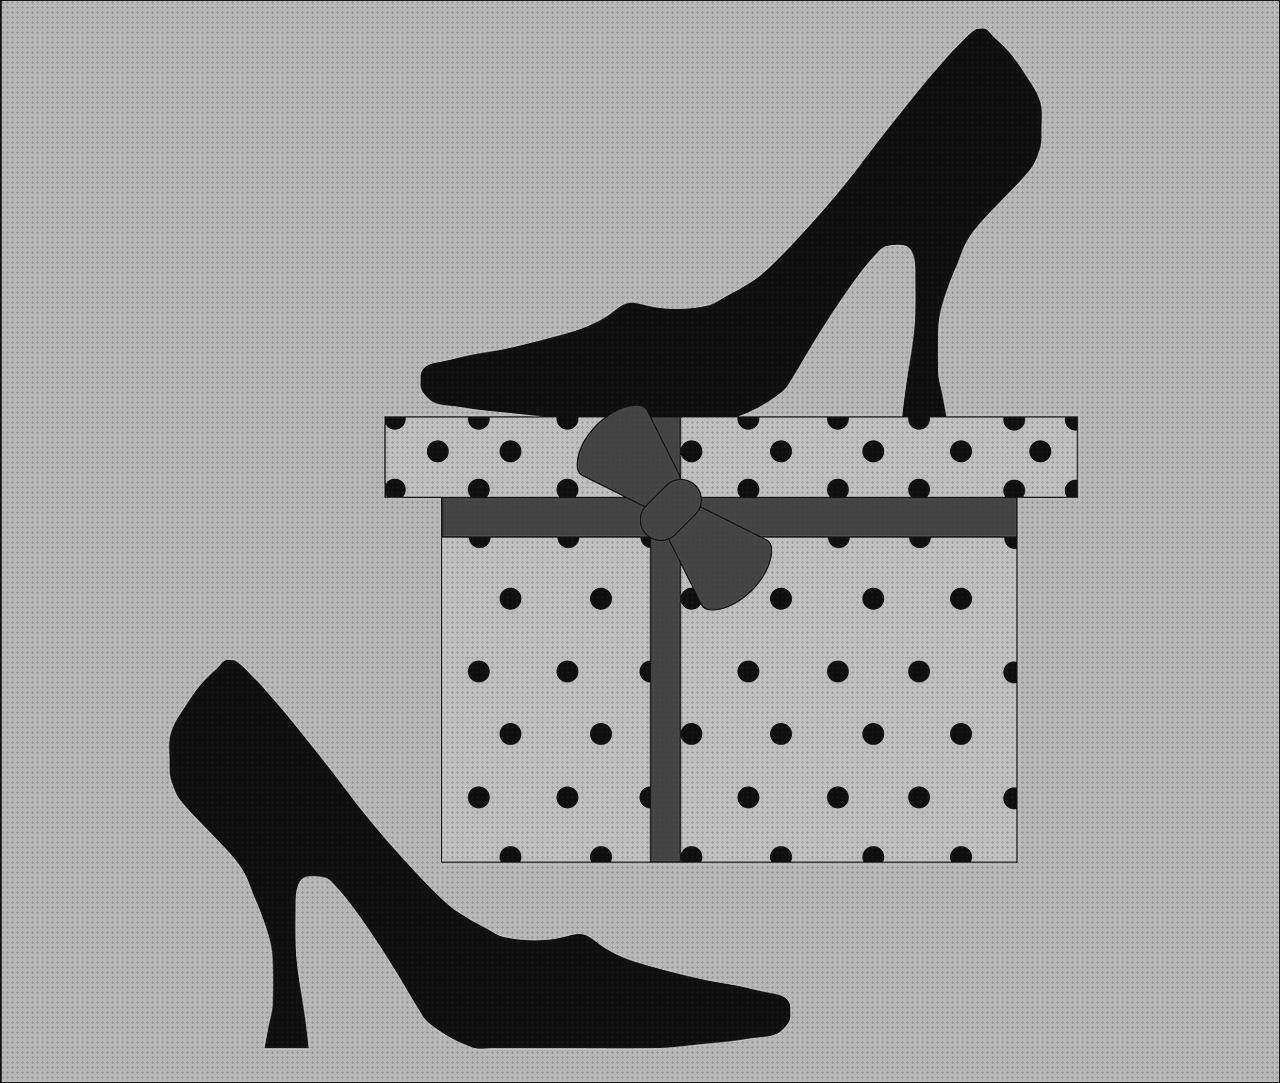 Las mejores zapato cómodo vestir mujer sofa cama cómodo cómodos colchón ergonómico de viscoelástica y gel aquapur zapato vestir negro cómodo